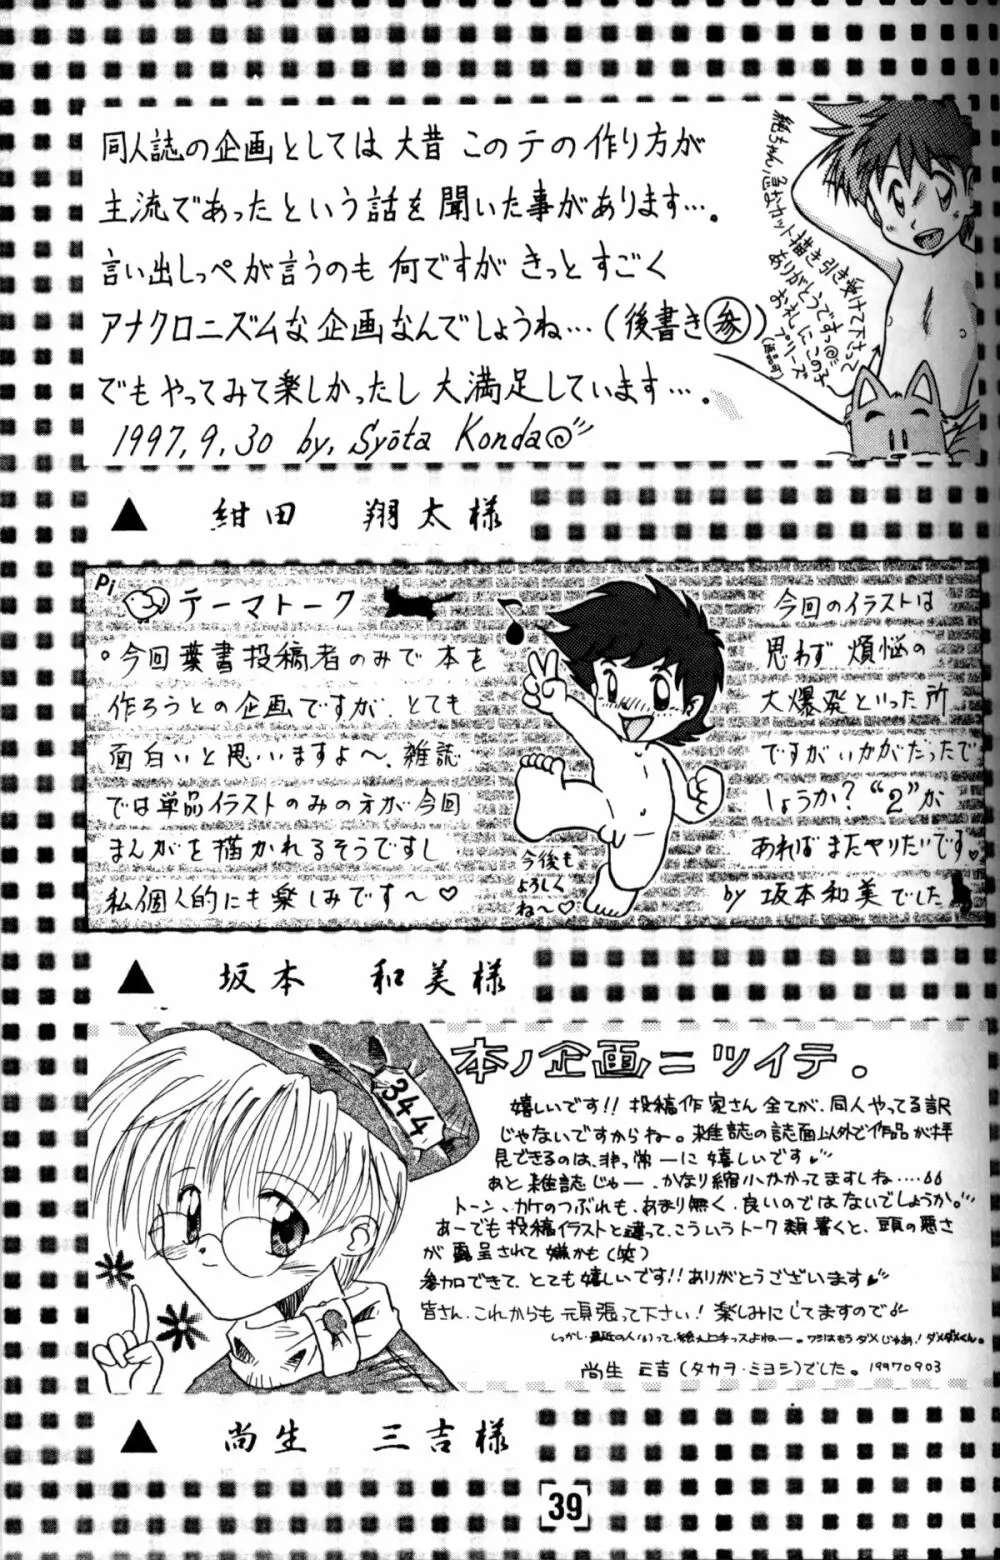 Anthology - Nekketsu Project - Volume 1 'Shounen Banana Milk' Page.38